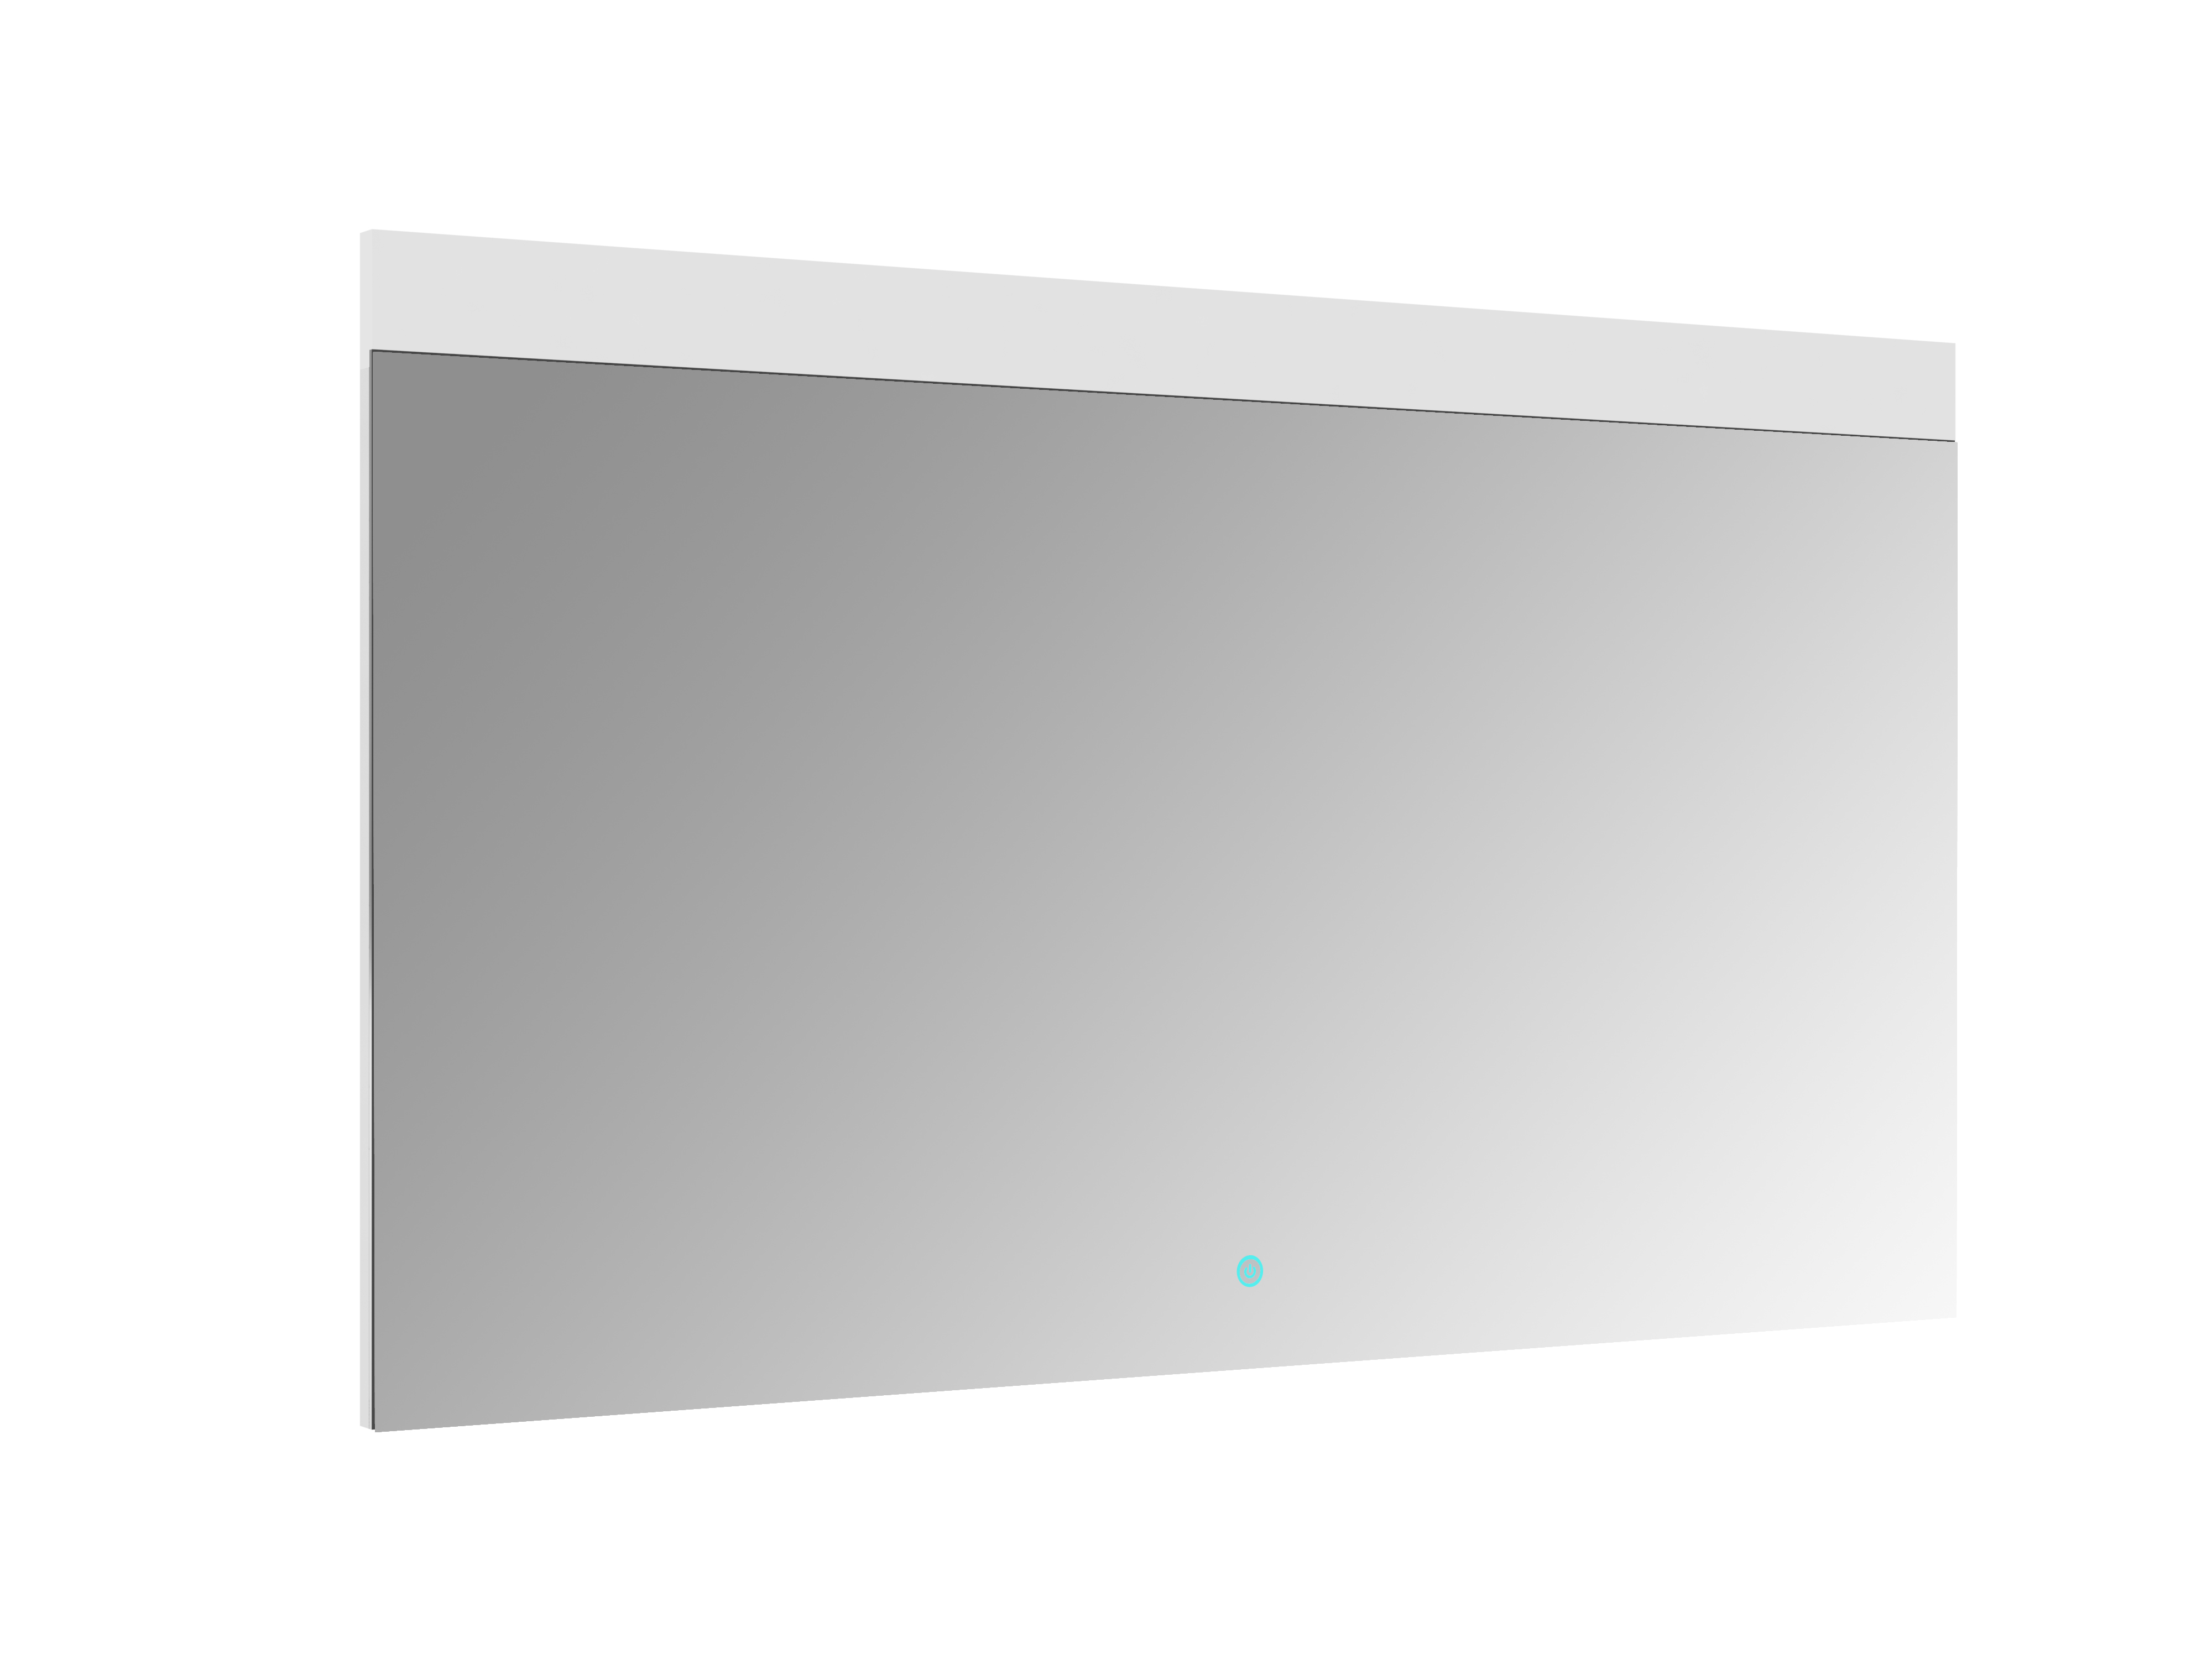 Miroir salle bain lumineux éclairage LED sensitif Connec't80